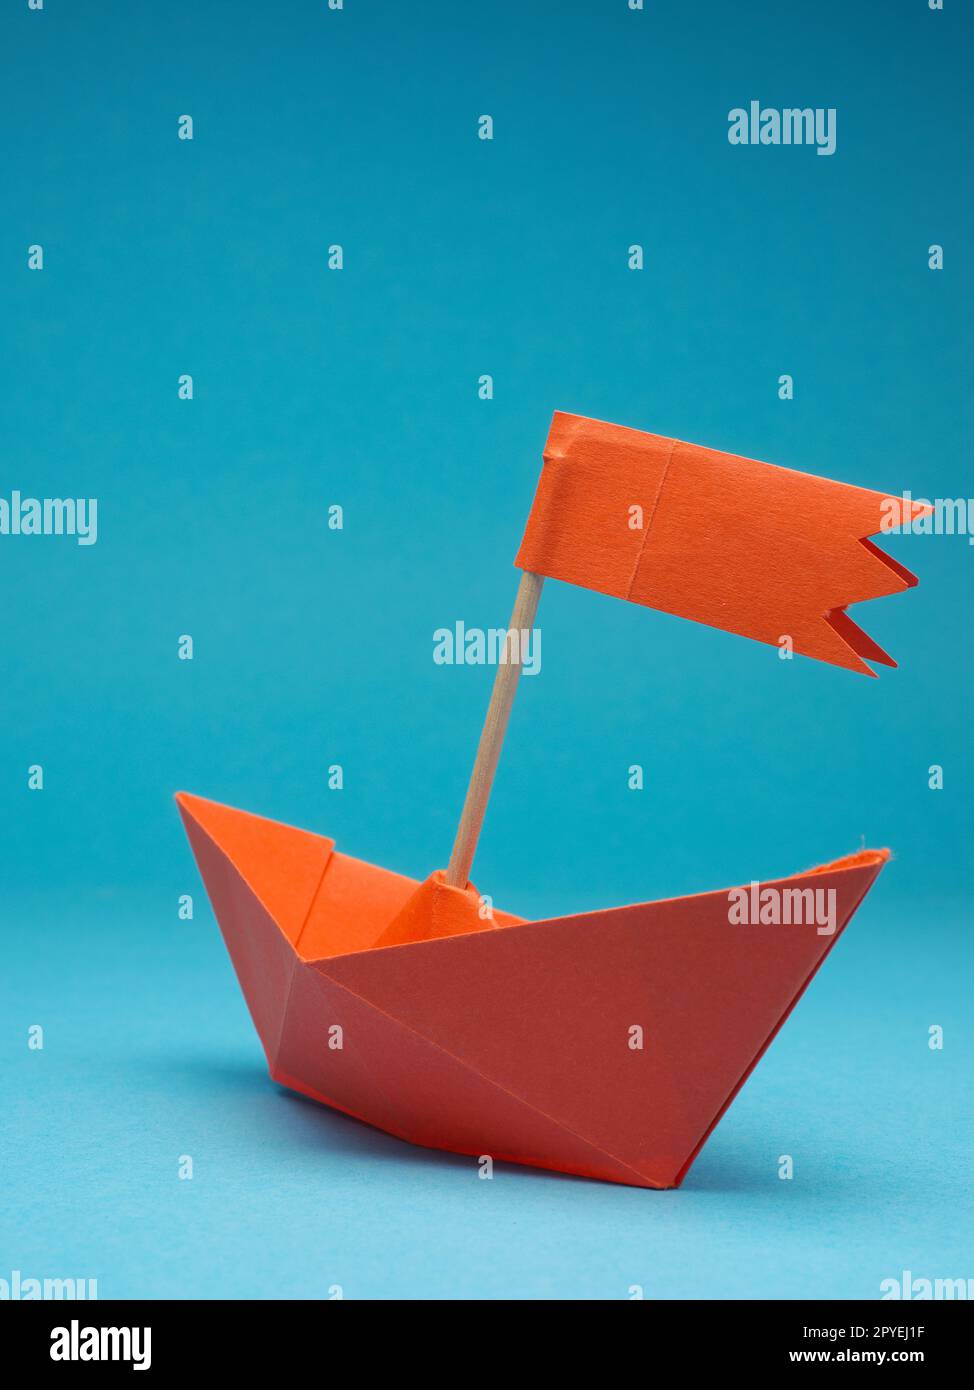 Nuove idee o concetto di trasformazione con un'imbarcazione di carta su sfondo blu Foto Stock